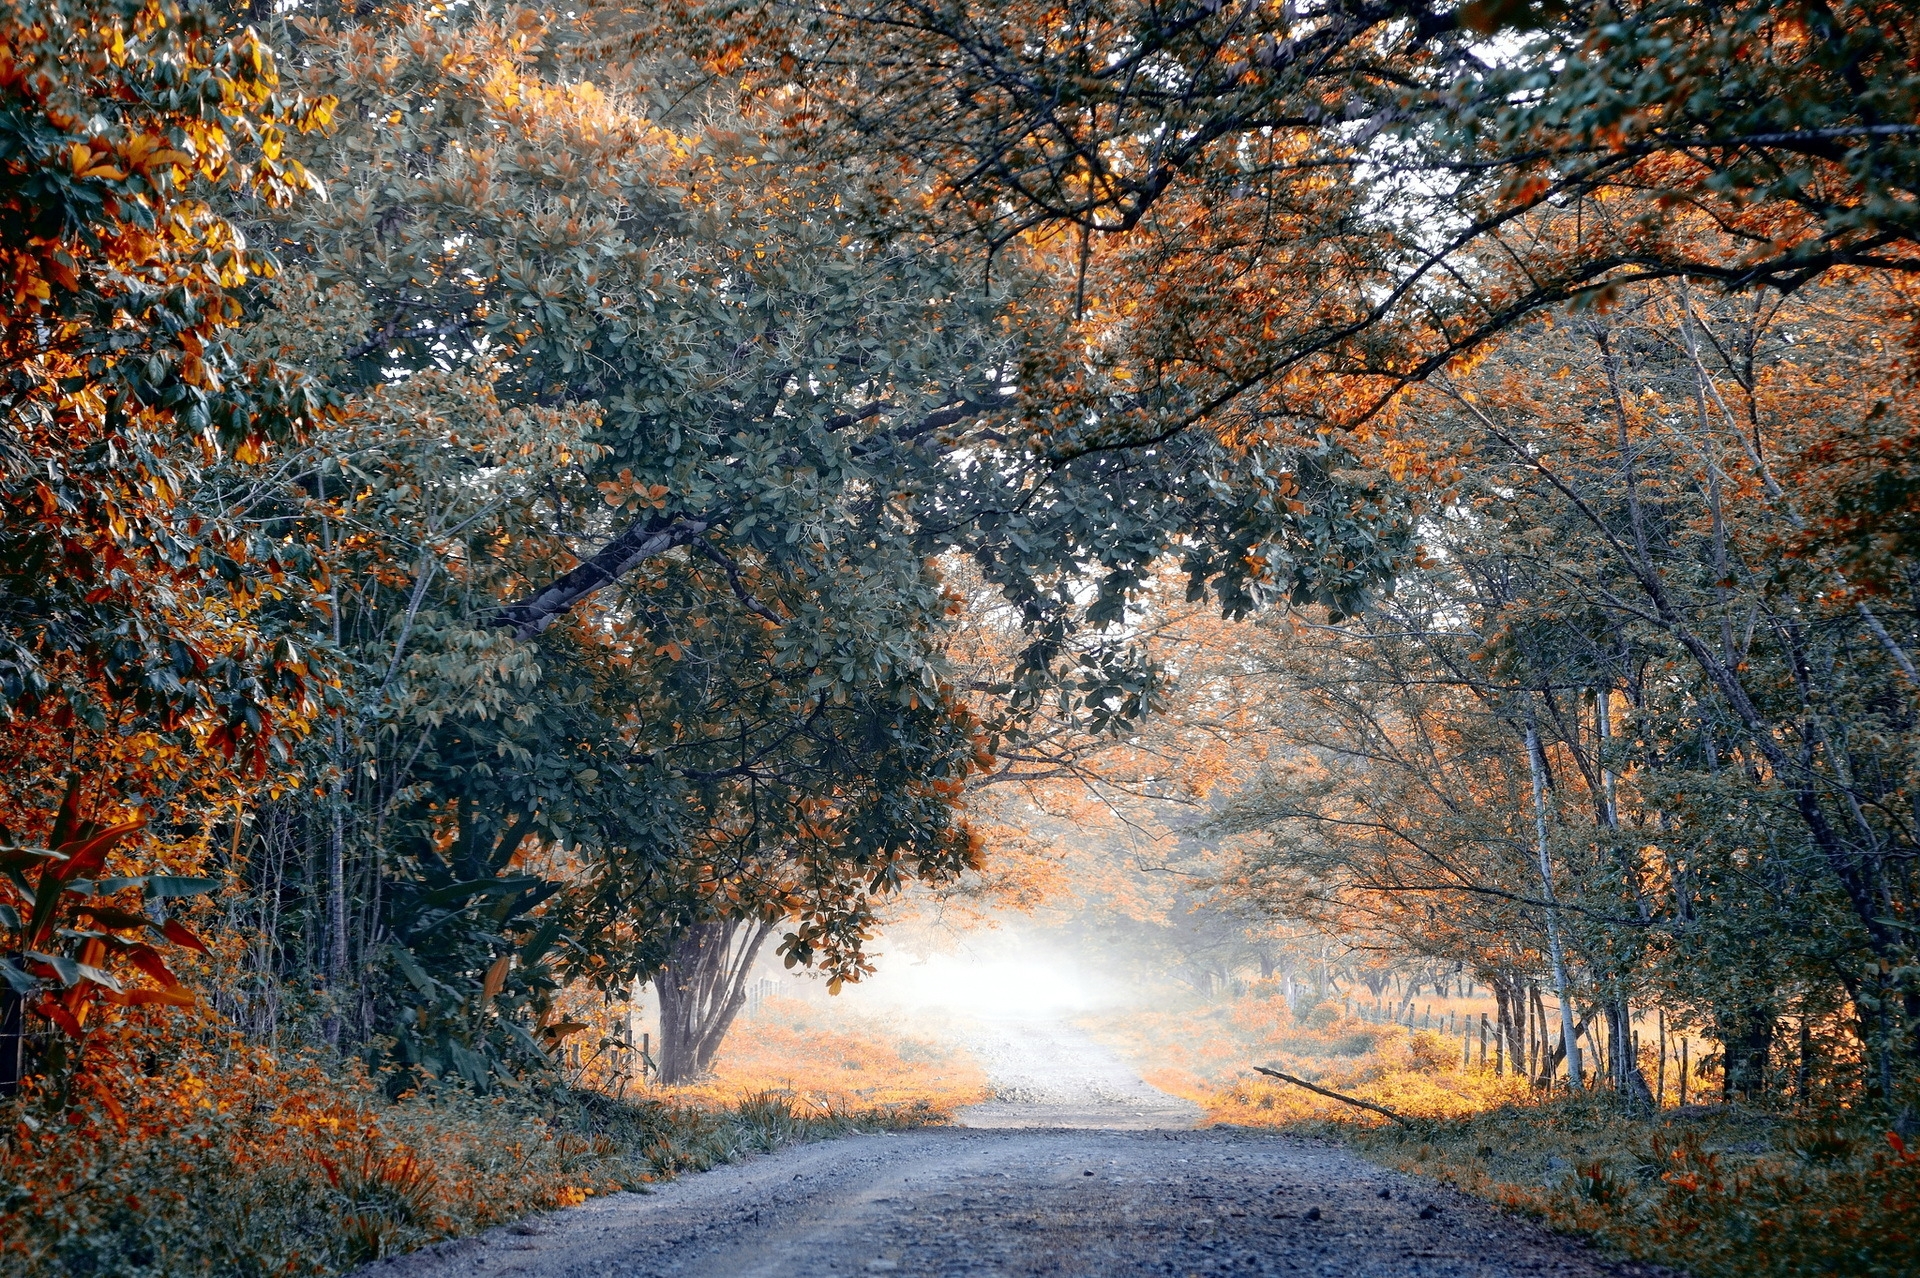 Картинка с грунтовой дорогой в осеннем лесу